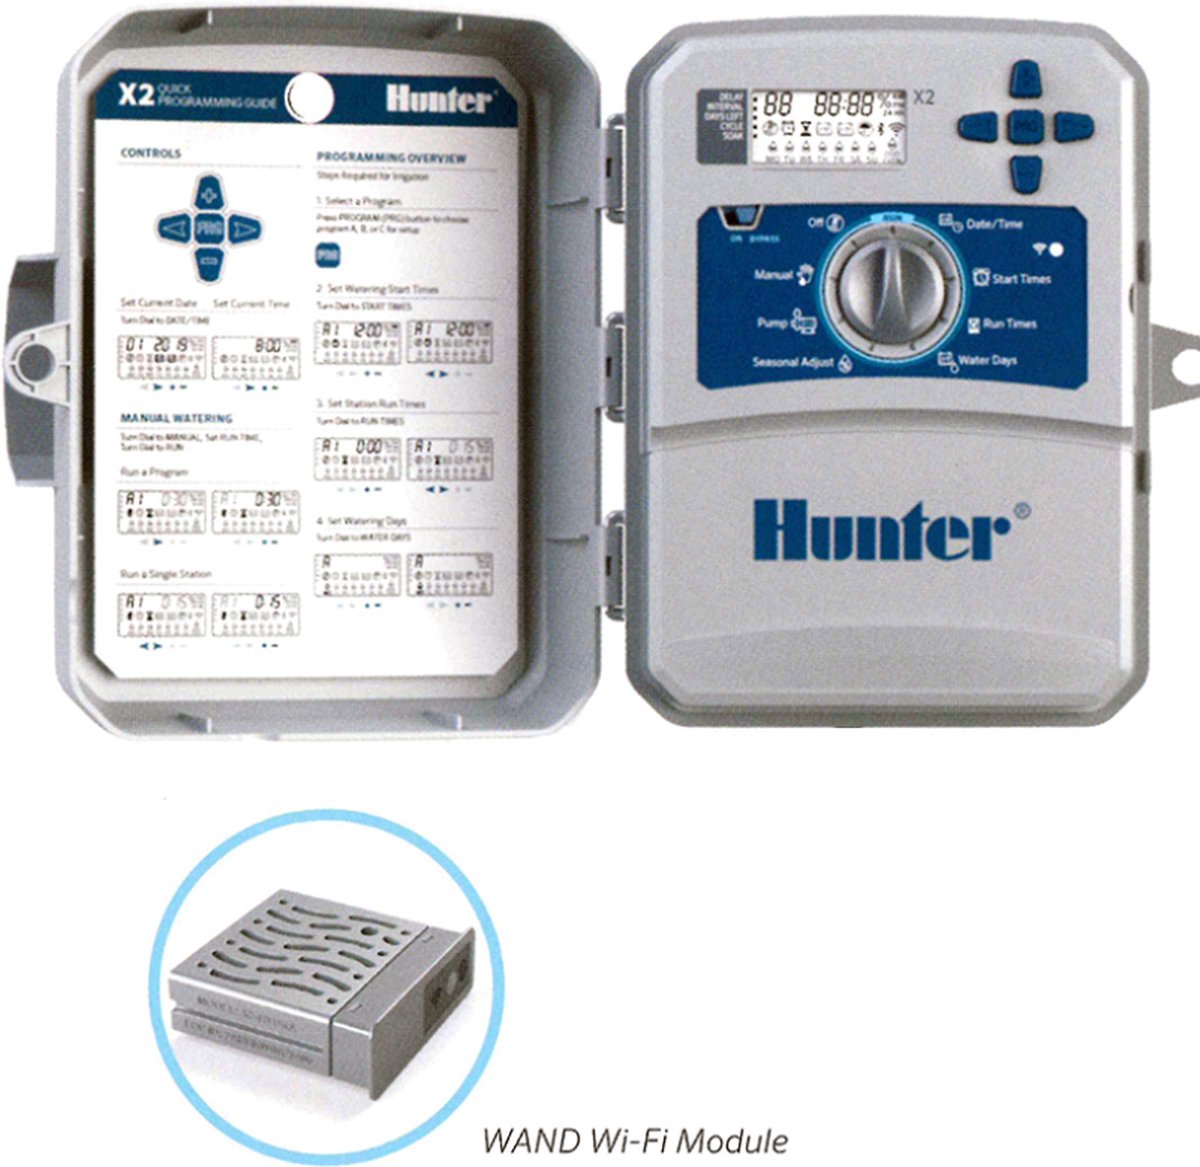 Hunter - besproeiingscomputer - X2-Core 601 (buitenmodel IP44) - 6 stations - 3 programma's met elk 4 start tijden